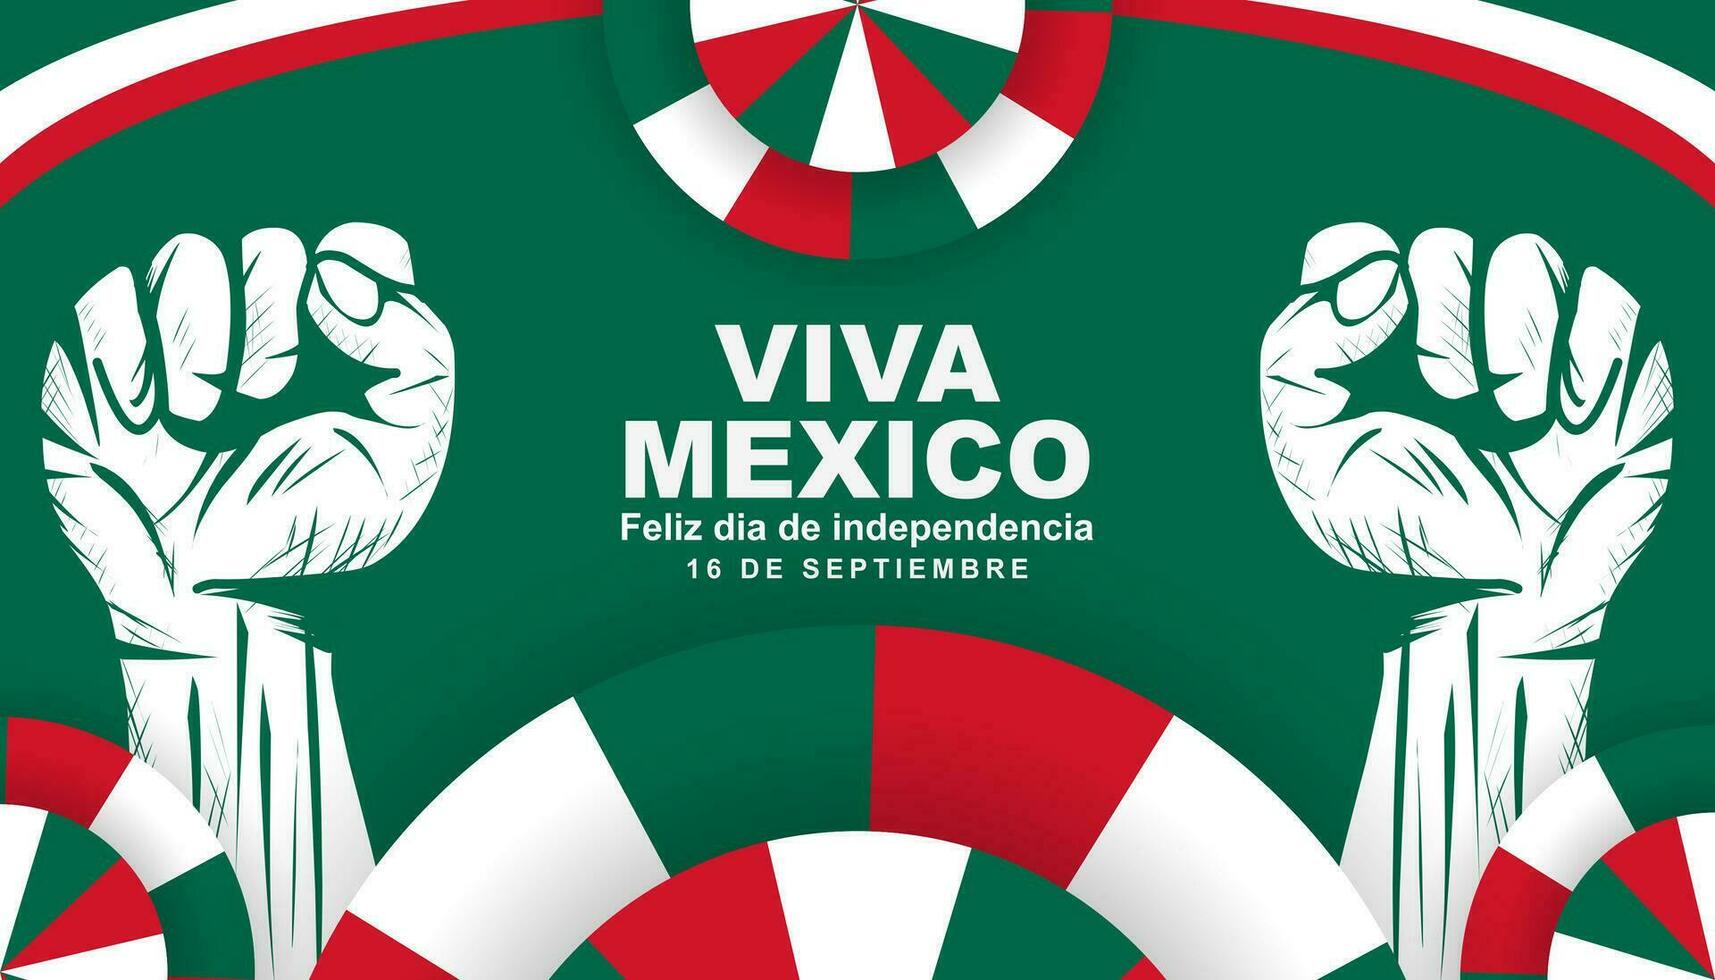 mexico independencia día celebrado cada año en septiembre 16, independencia día saludo tarjeta póster. vector ilustración diseño